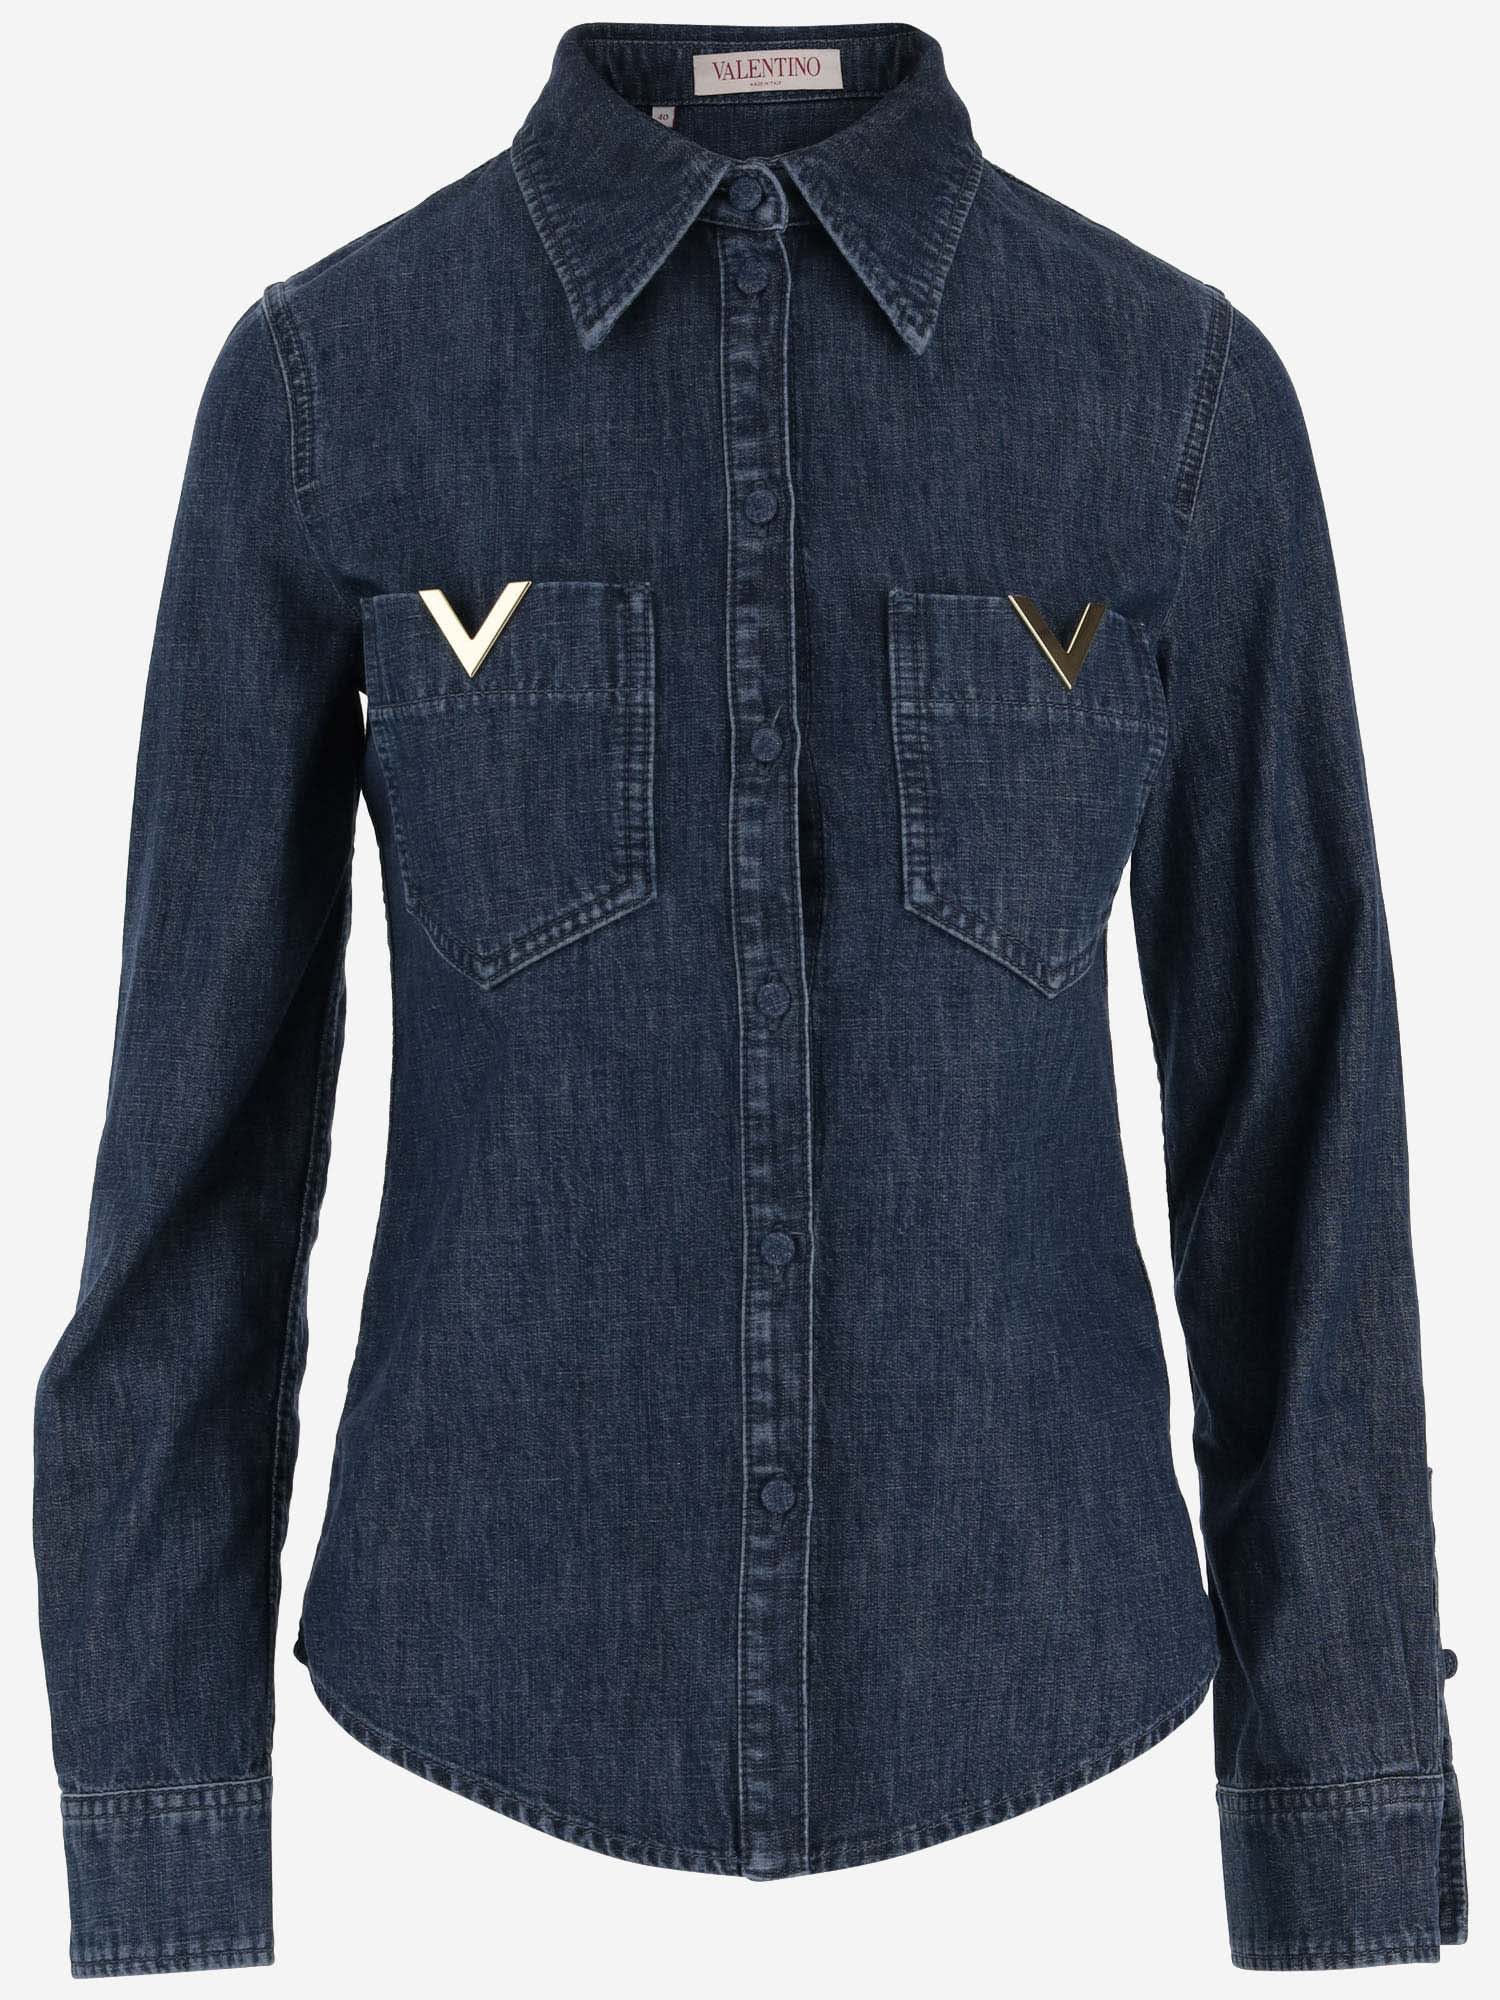 Valentino Cotton Denim Shirt With Vlogo In Medium Blue Denim